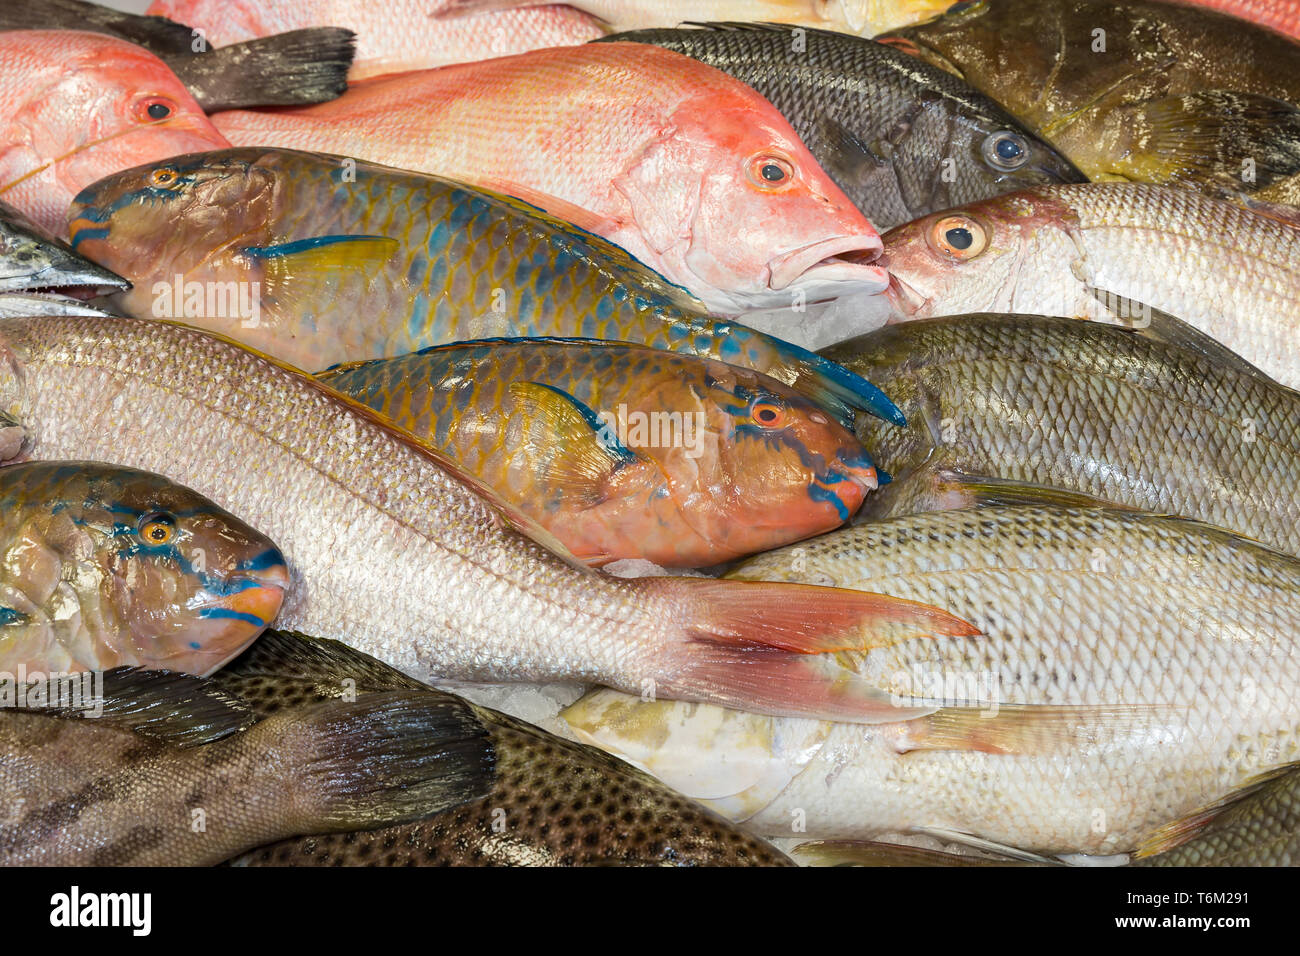 Various fresh fish at a fish market Stock Photo